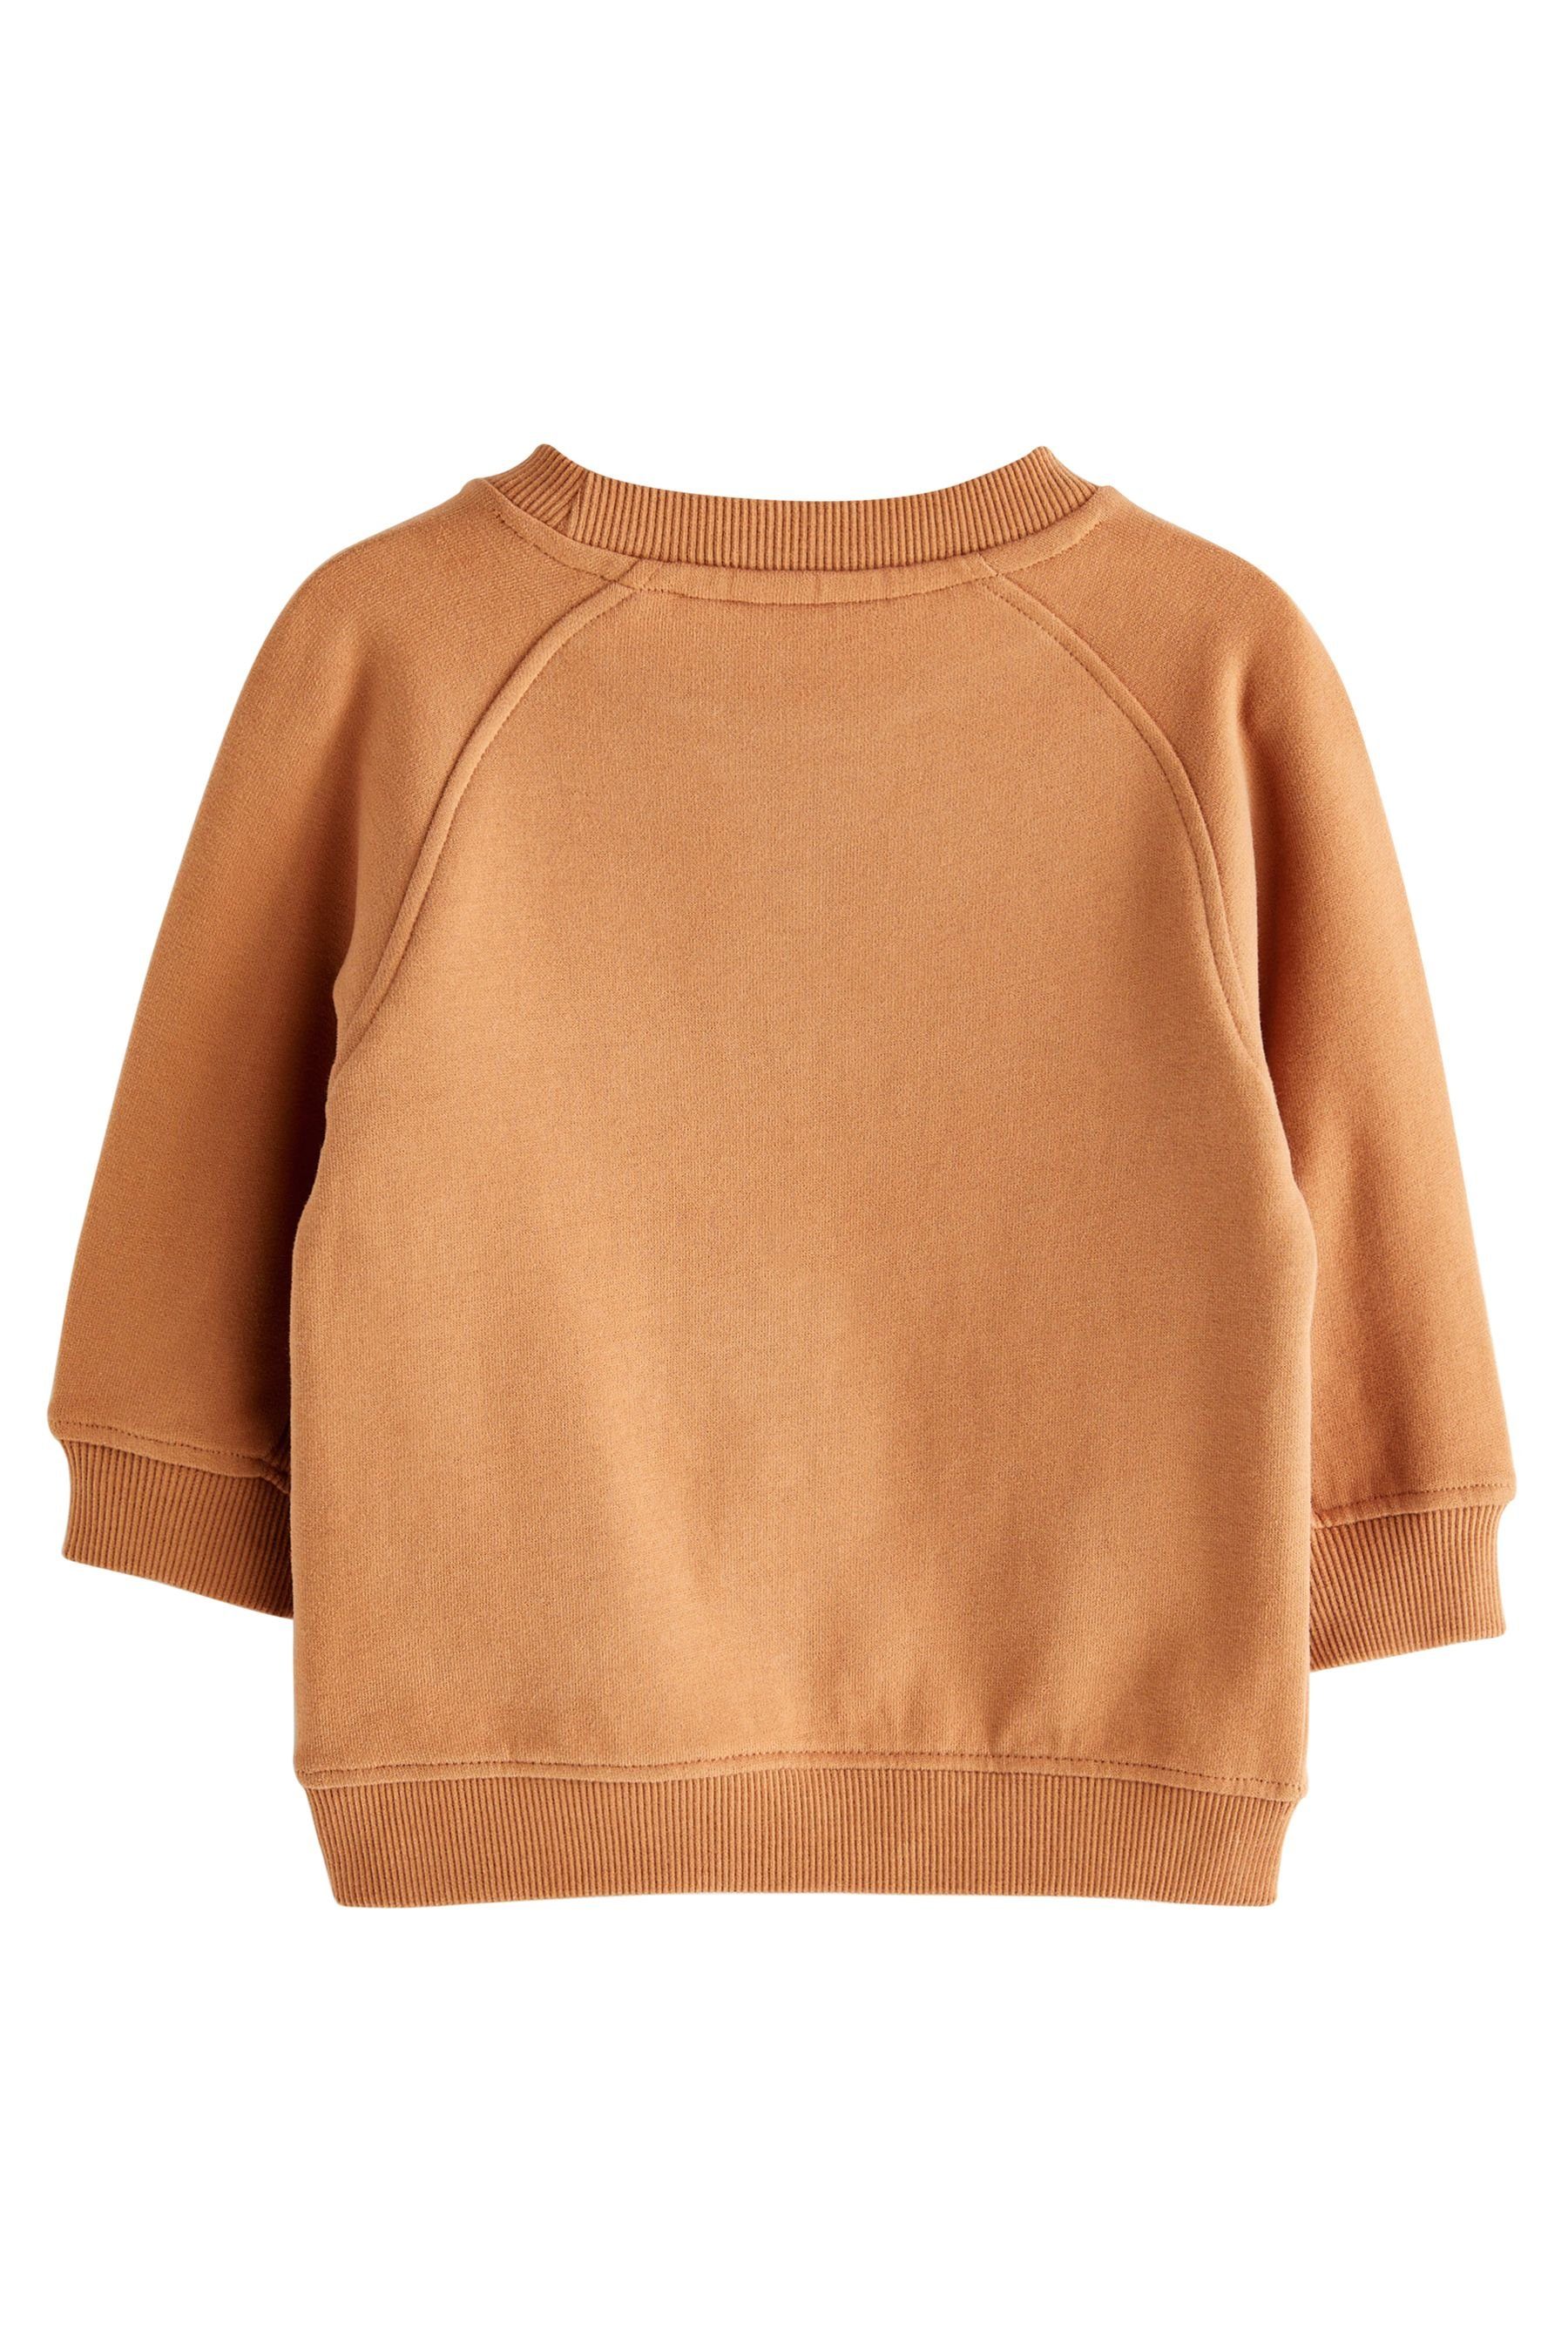 Next Brown (1-tlg) Sweatshirt Oversized Weiches Jersey-Sweatshirt Tan